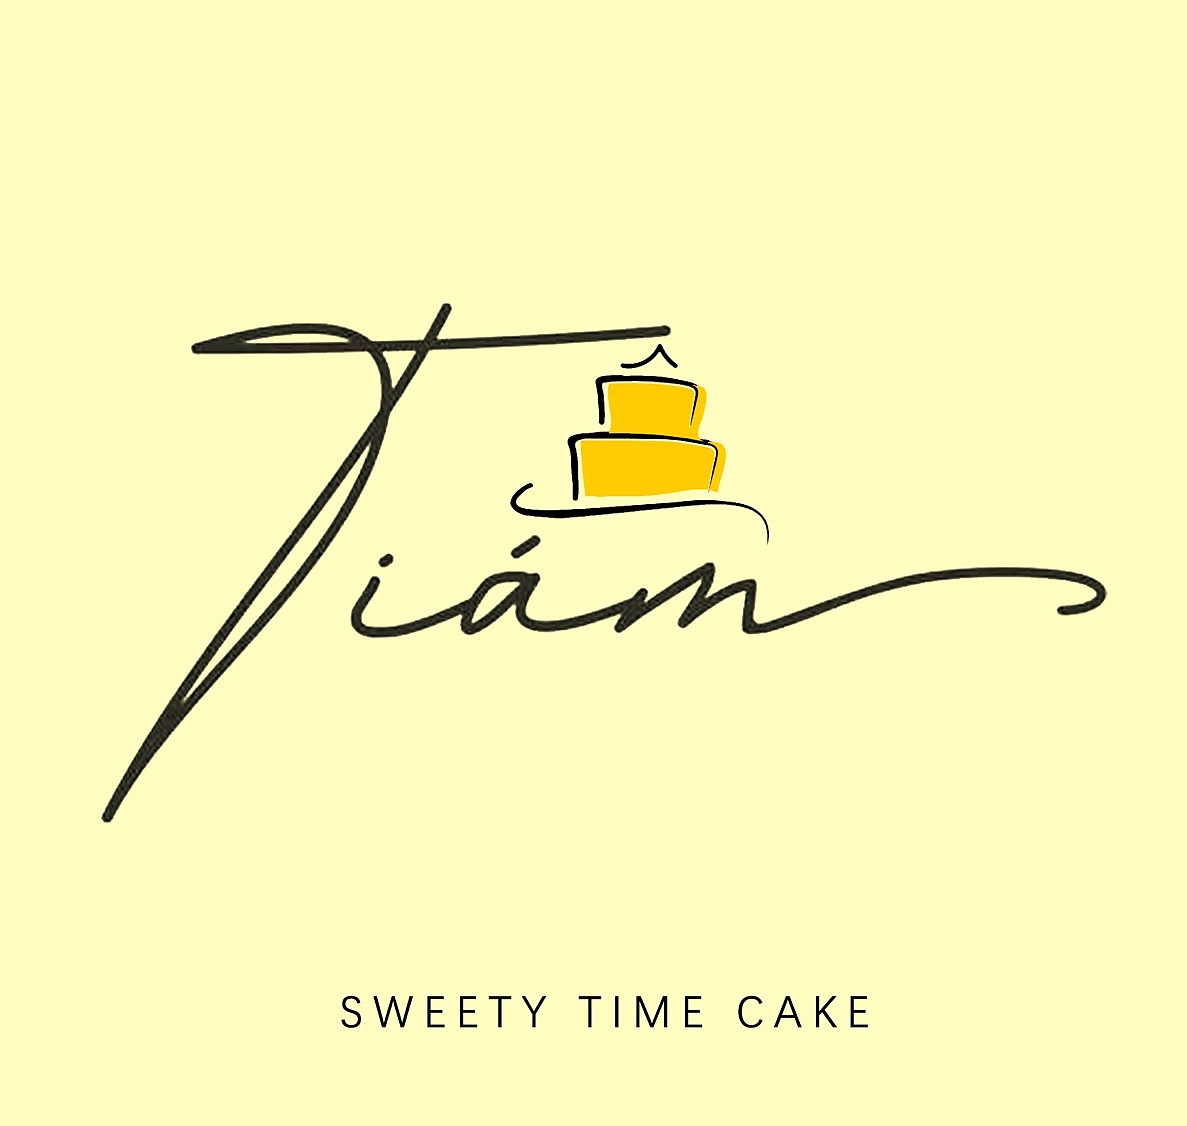 原创设计甜蜜时光蛋糕店logo